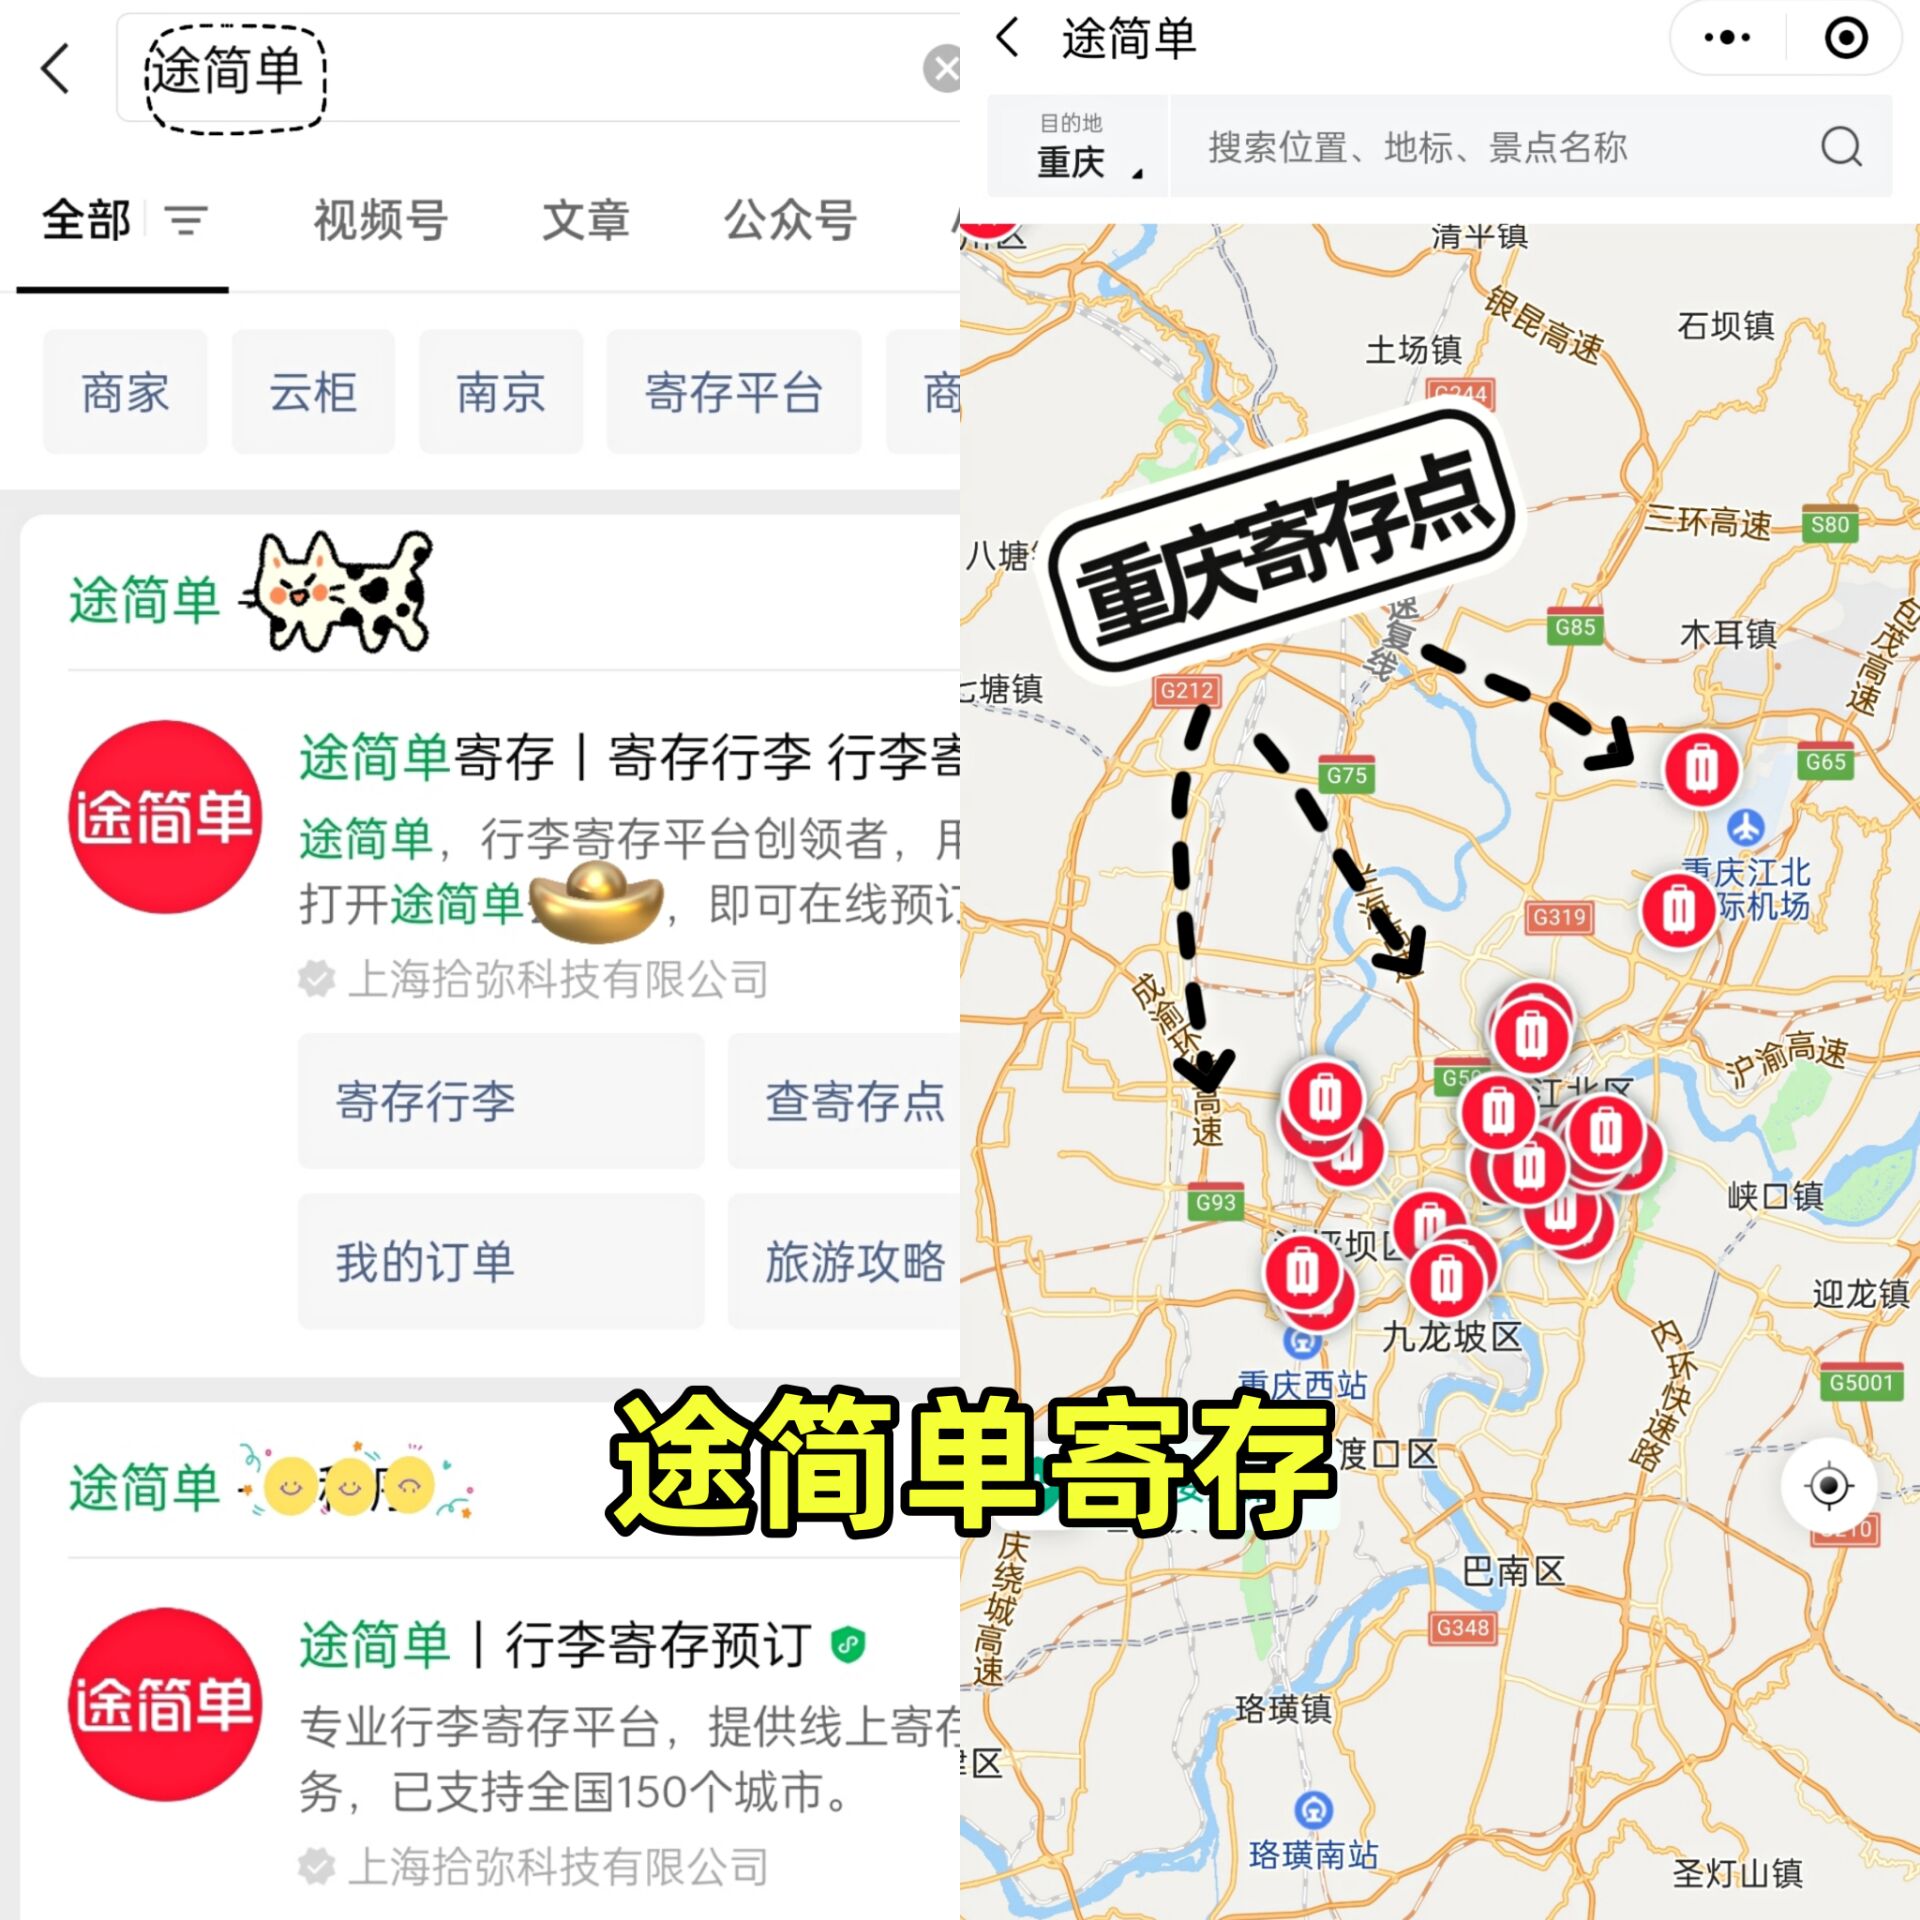 重庆七星岗地铁站有寄存行李的地方吗？收费多少？